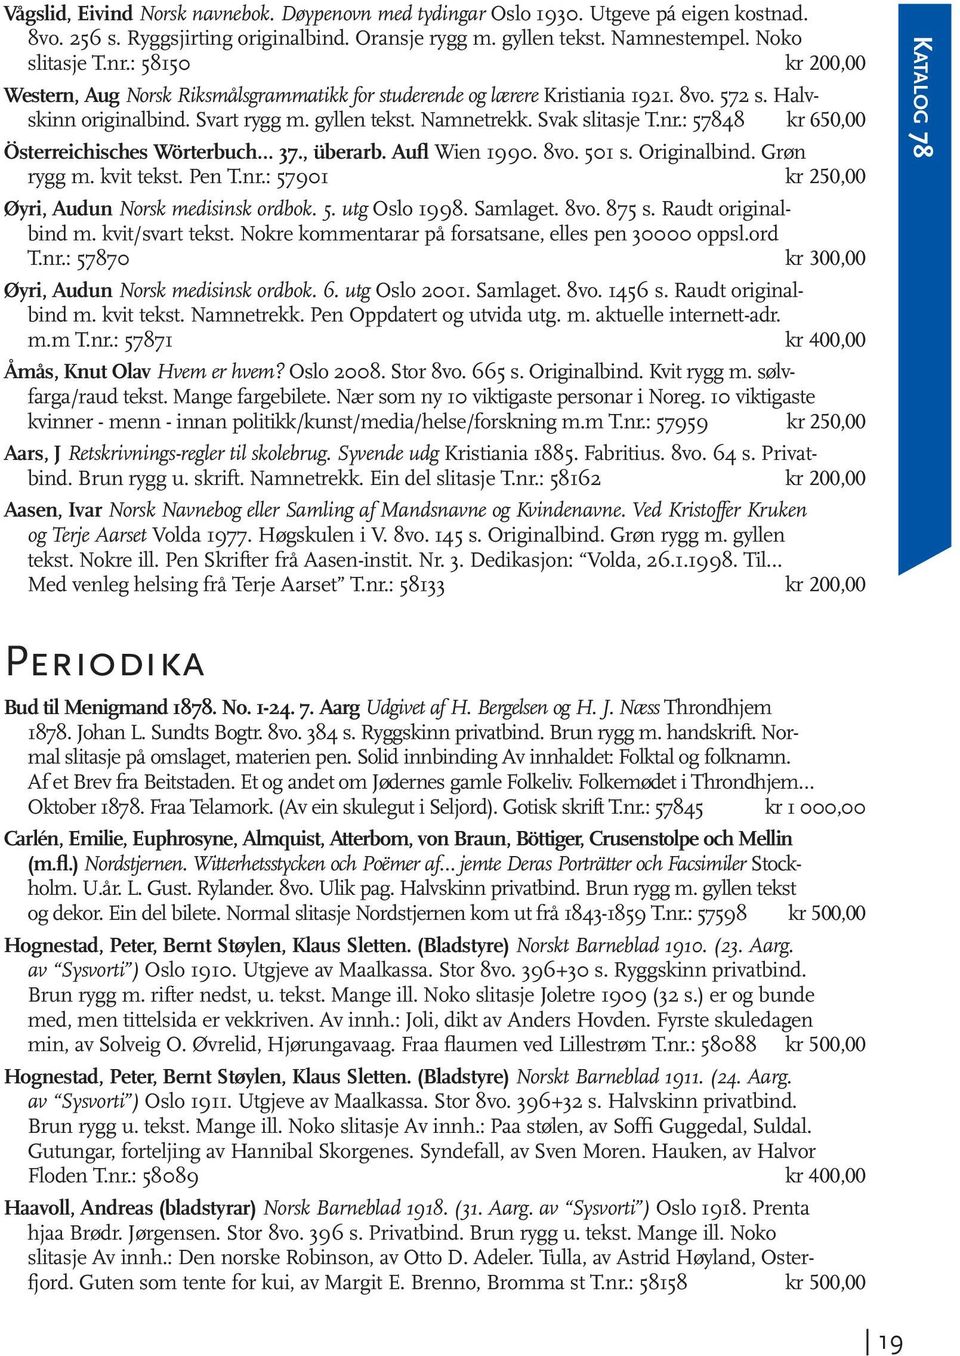 : 57848 kr 650,00 Österreichisches Wörterbuch 37., überarb. Aufl Wien 1990. 8vo. 501 s. Originalbind. Grøn rygg m. kvit tekst. Pen T.nr.: 57901 kr 250,00 Øyri, Audun Norsk medisinsk ordbok. 5. utg Oslo 1998.